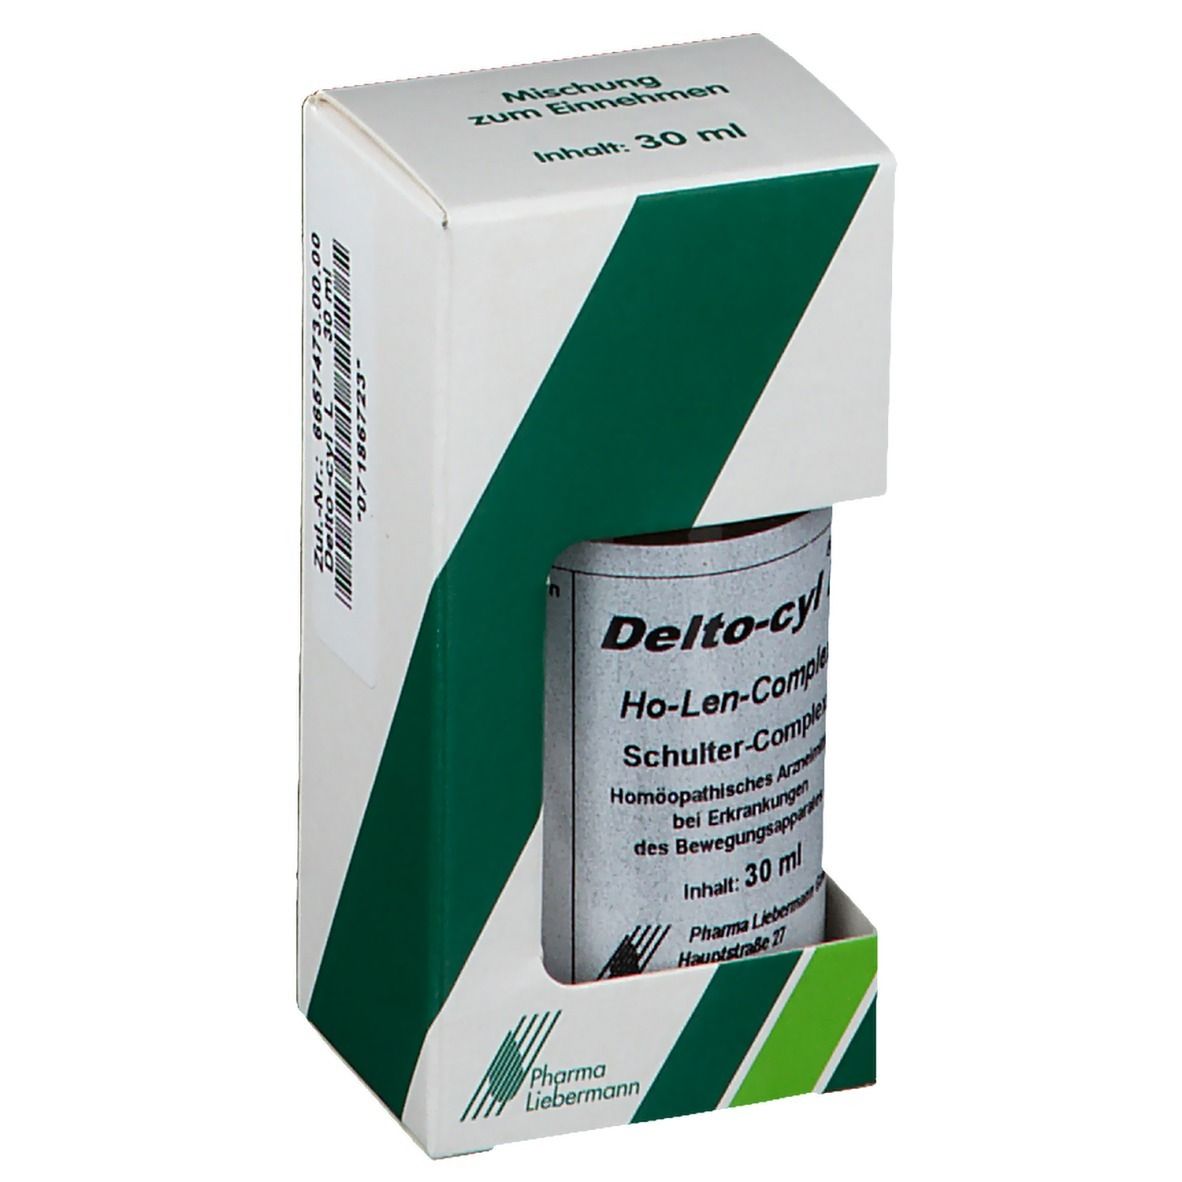 Delto-cyl® L Schulter-Complex Tropfen